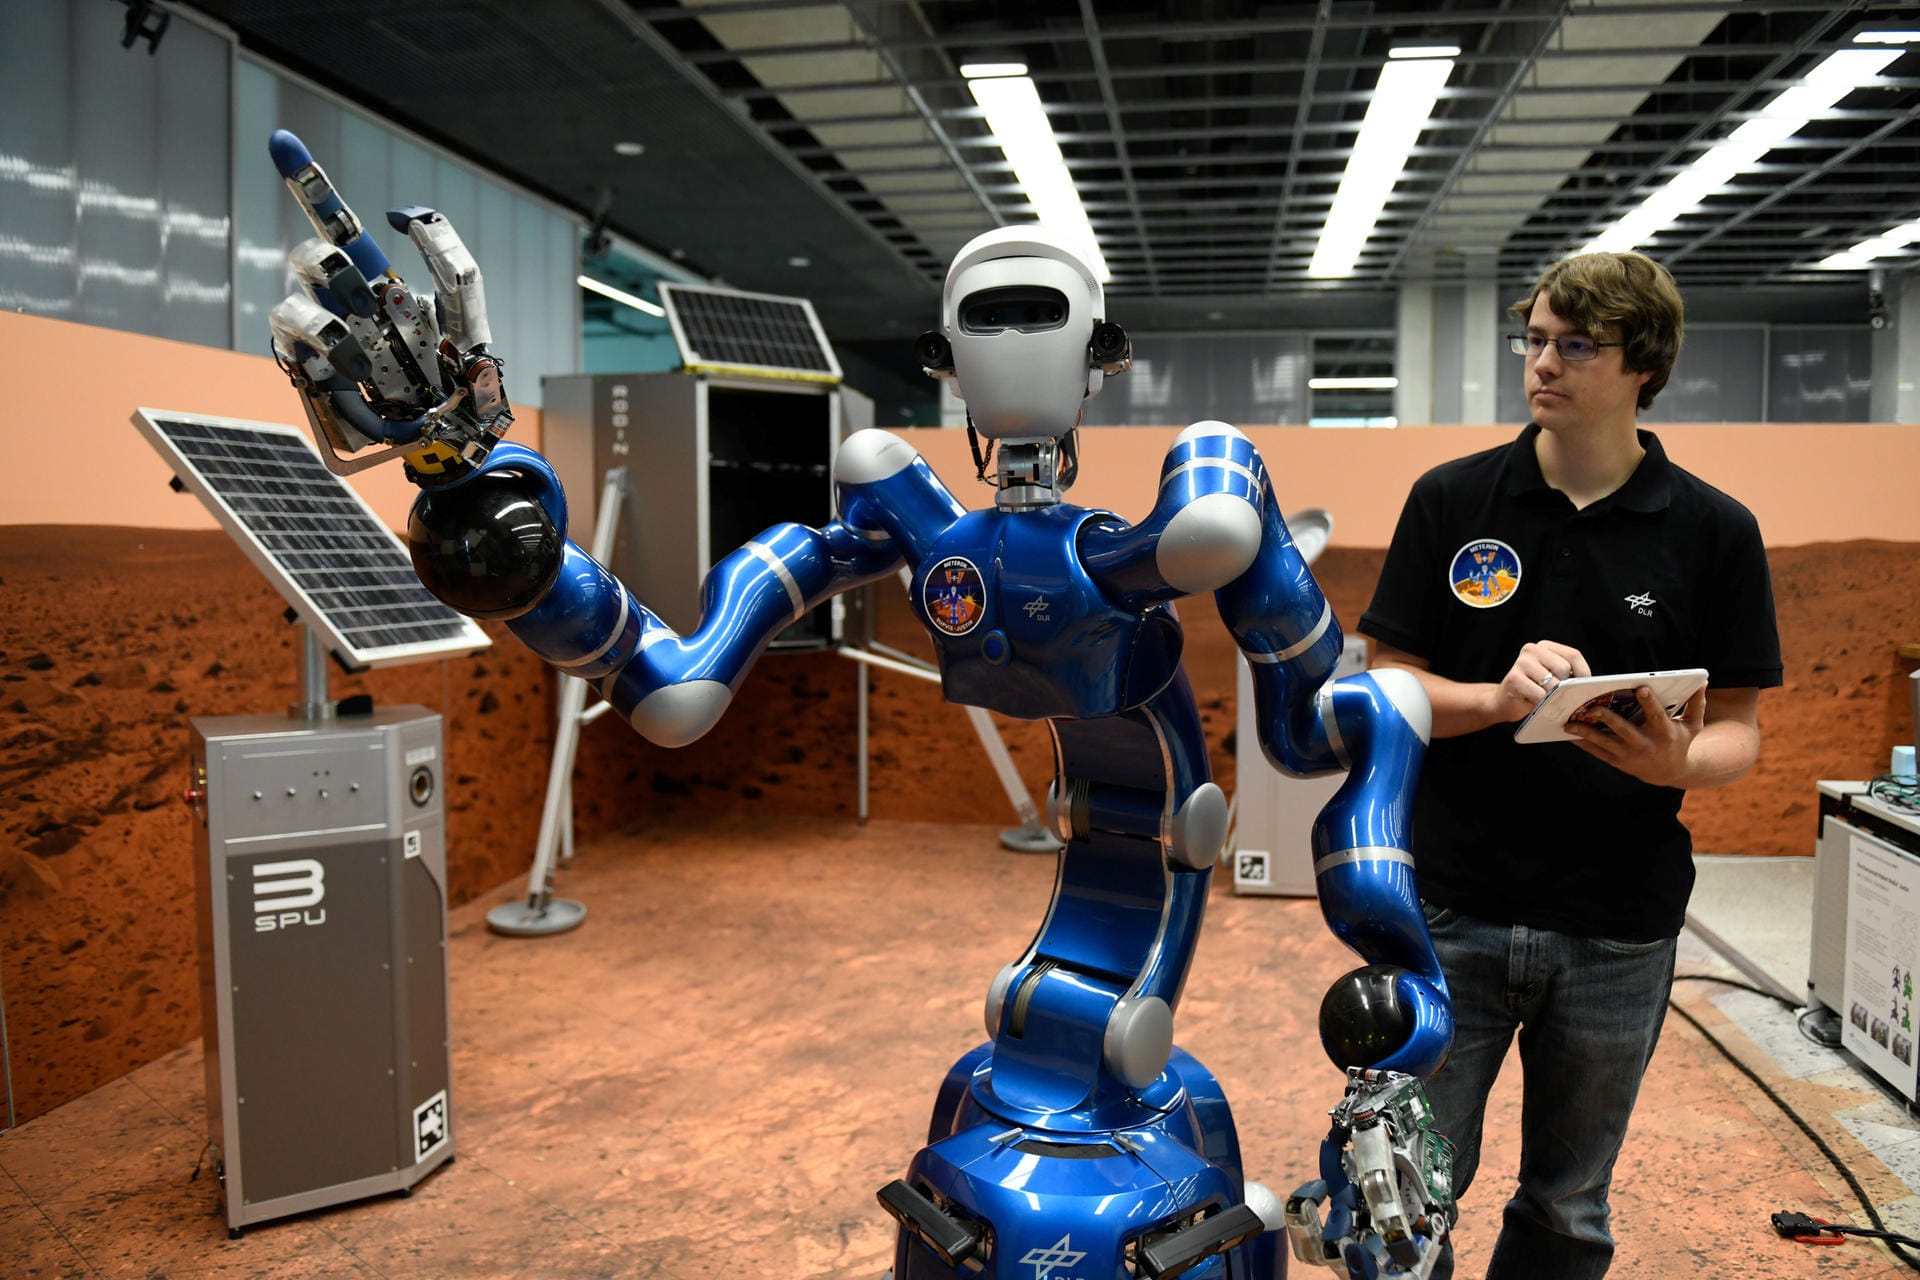 Der Roboter "Justin" soll mithilfe einer vierfingrigen Hand und vielen Kameras verschiedene Aufgaben bewältigen. Entwickelt wurde er vom Deutschen Zentrum für Luft- und Raumfahrt.